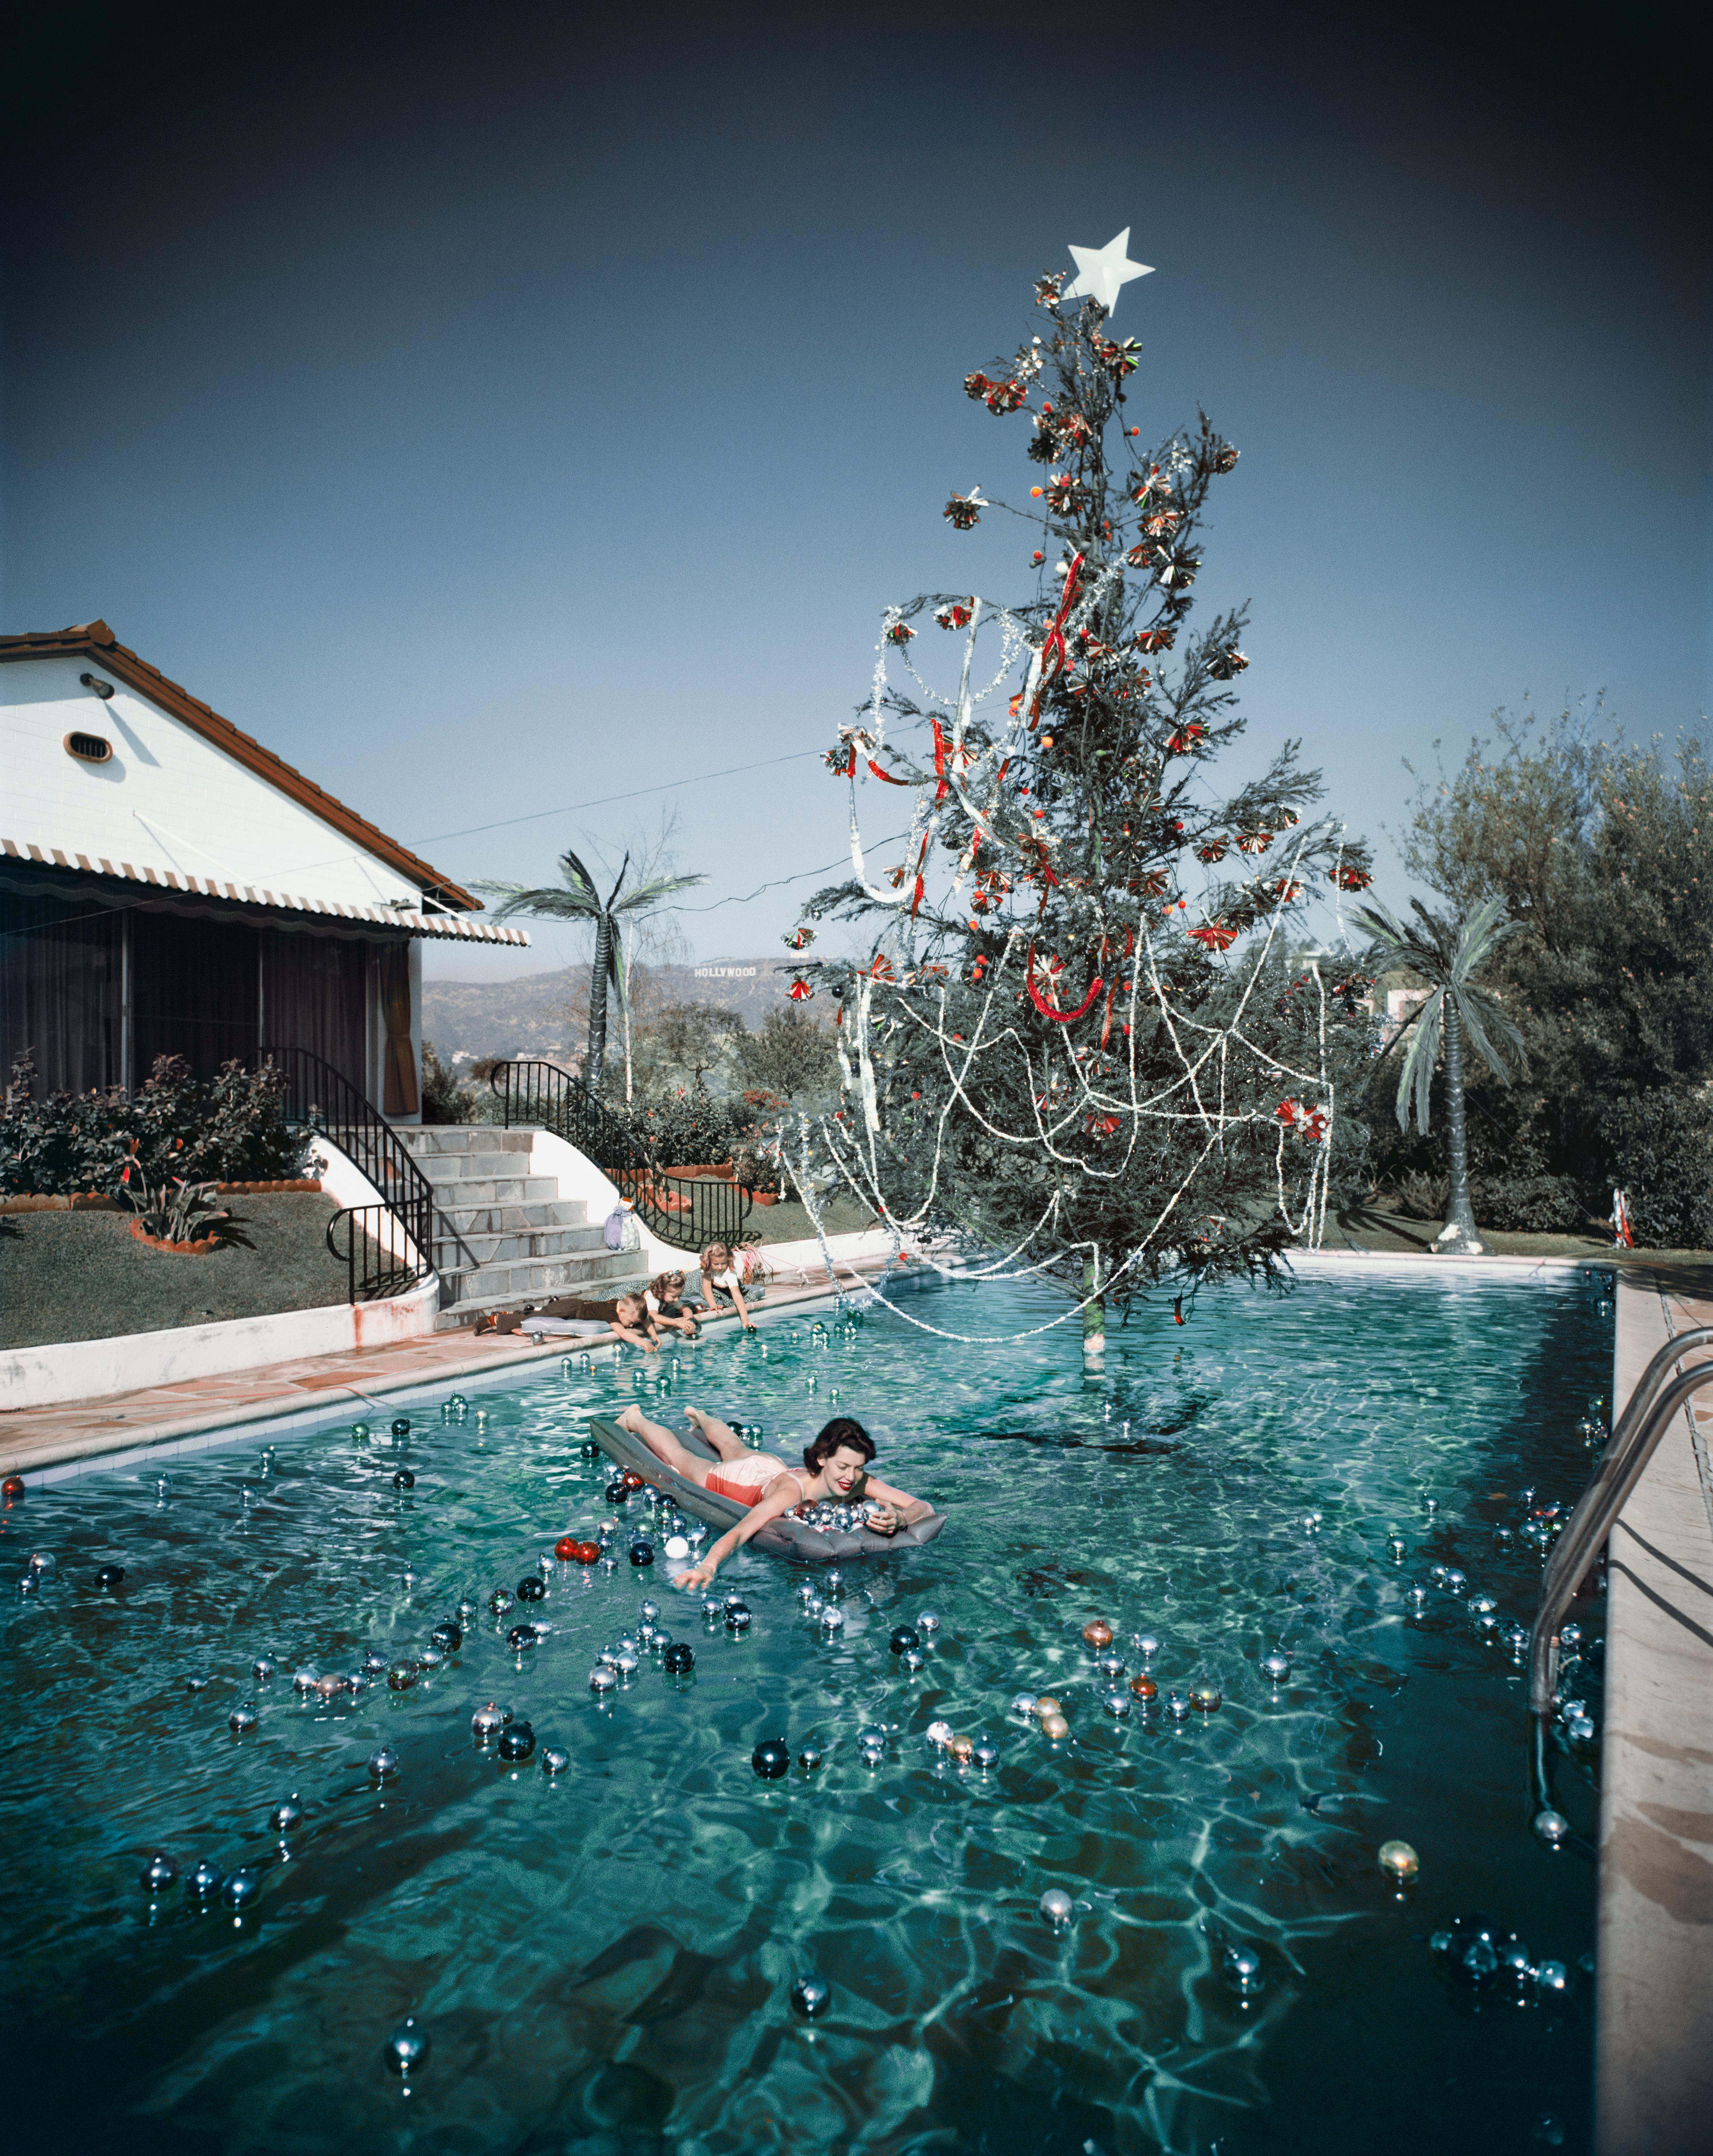 Rita Aarons, Ehefrau des Fotografen Slim Aarons, auf einer Luftmatratze in einem weihnachtlich geschmückten Swimmingpool, Hollywood, 1954. In der Ferne ist das Hollywood-Schild zu sehen. 

Nachlassgestempelte und handnummerierte Auflage von 150